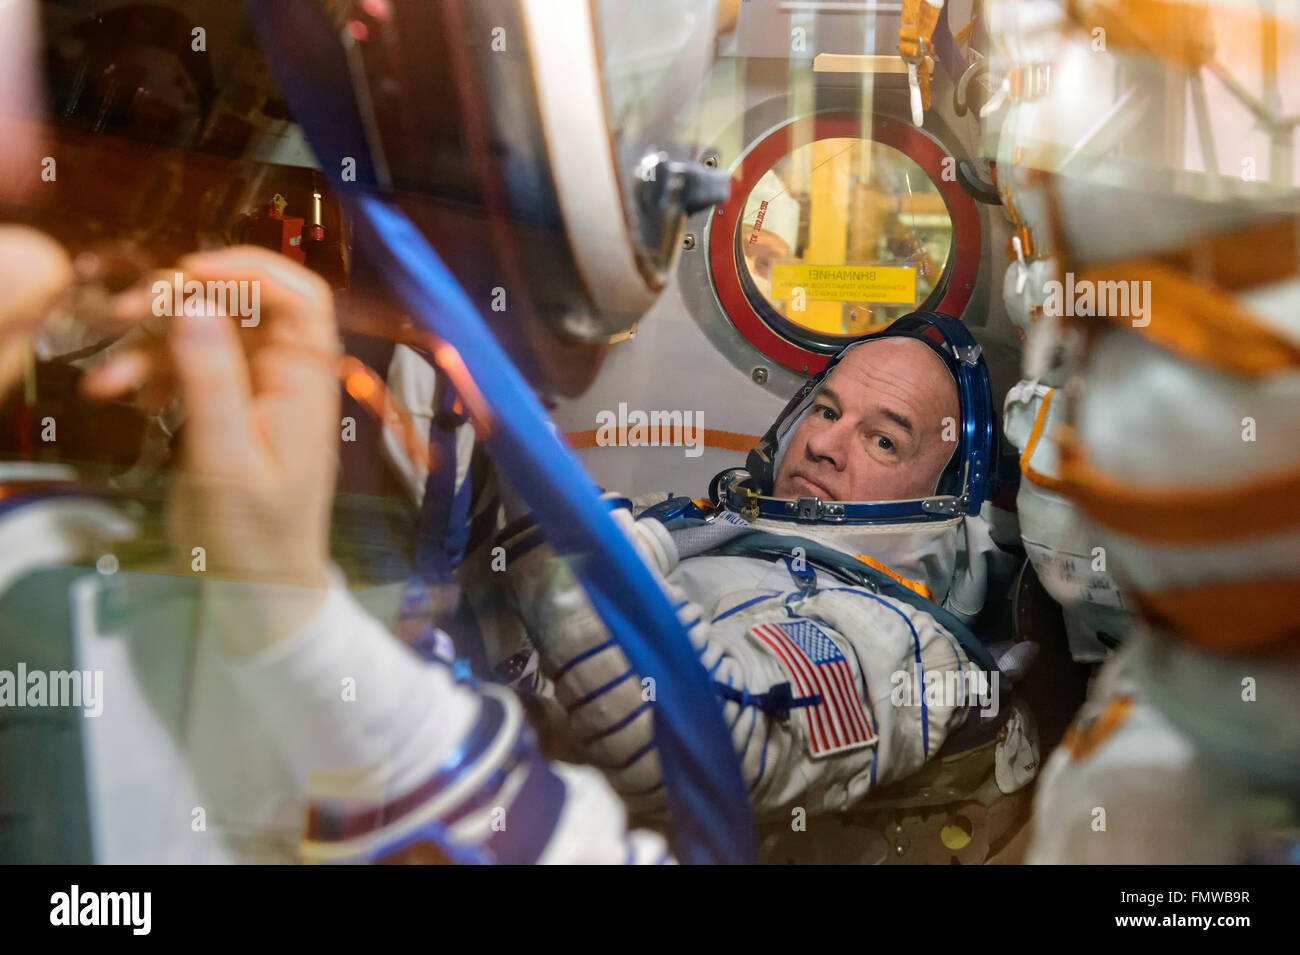 Stazione Spaziale Internazionale Expedition 47 astronauta Jeff Williams della NASA all'interno della Soyuz TMA-20M veicolo spaziale durante un fit check prove abito presso il cosmodromo di Baikonur il 4 marzo 2016 in Kazakistan. L'equipaggio sono programmati per il lancio su un periodo di sei mesi di missione per la stazione su Marzo 19th. Foto Stock